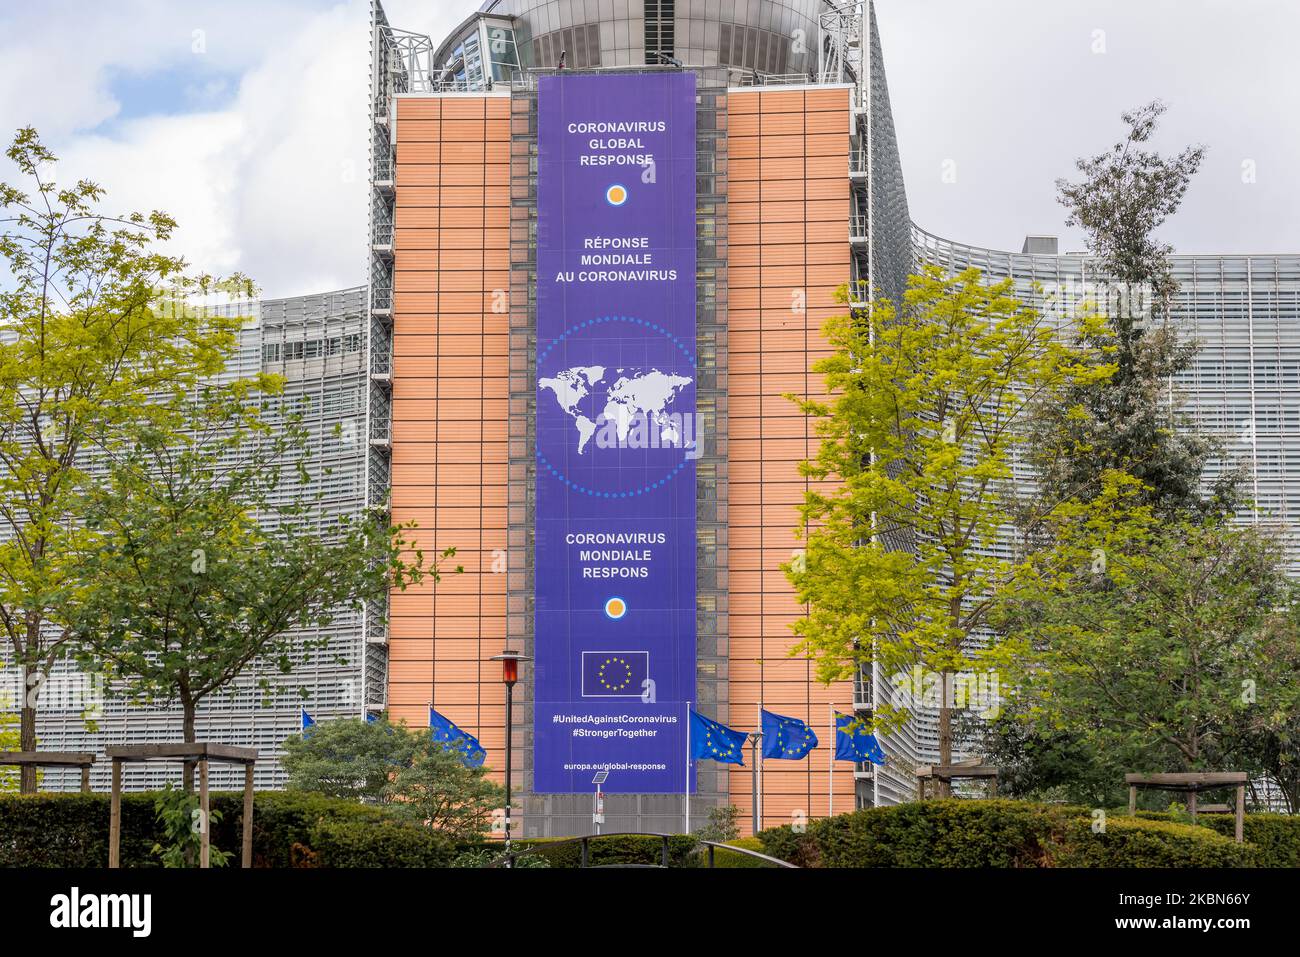 Vorderansicht des Berlaymont-Gebäudes, in dem sich der Sitz der Europäischen Kommission in Brüssel, Belgien, befindet 01. Mai 2020. Neues Banner über die globale Reaktion des Coronavirus, um die Ausbreitung der globalen Reaktion des Coronavirus ( COVID-19) einzudämmen. (Foto von Jonathan Raa/NurPhoto) Stockfoto